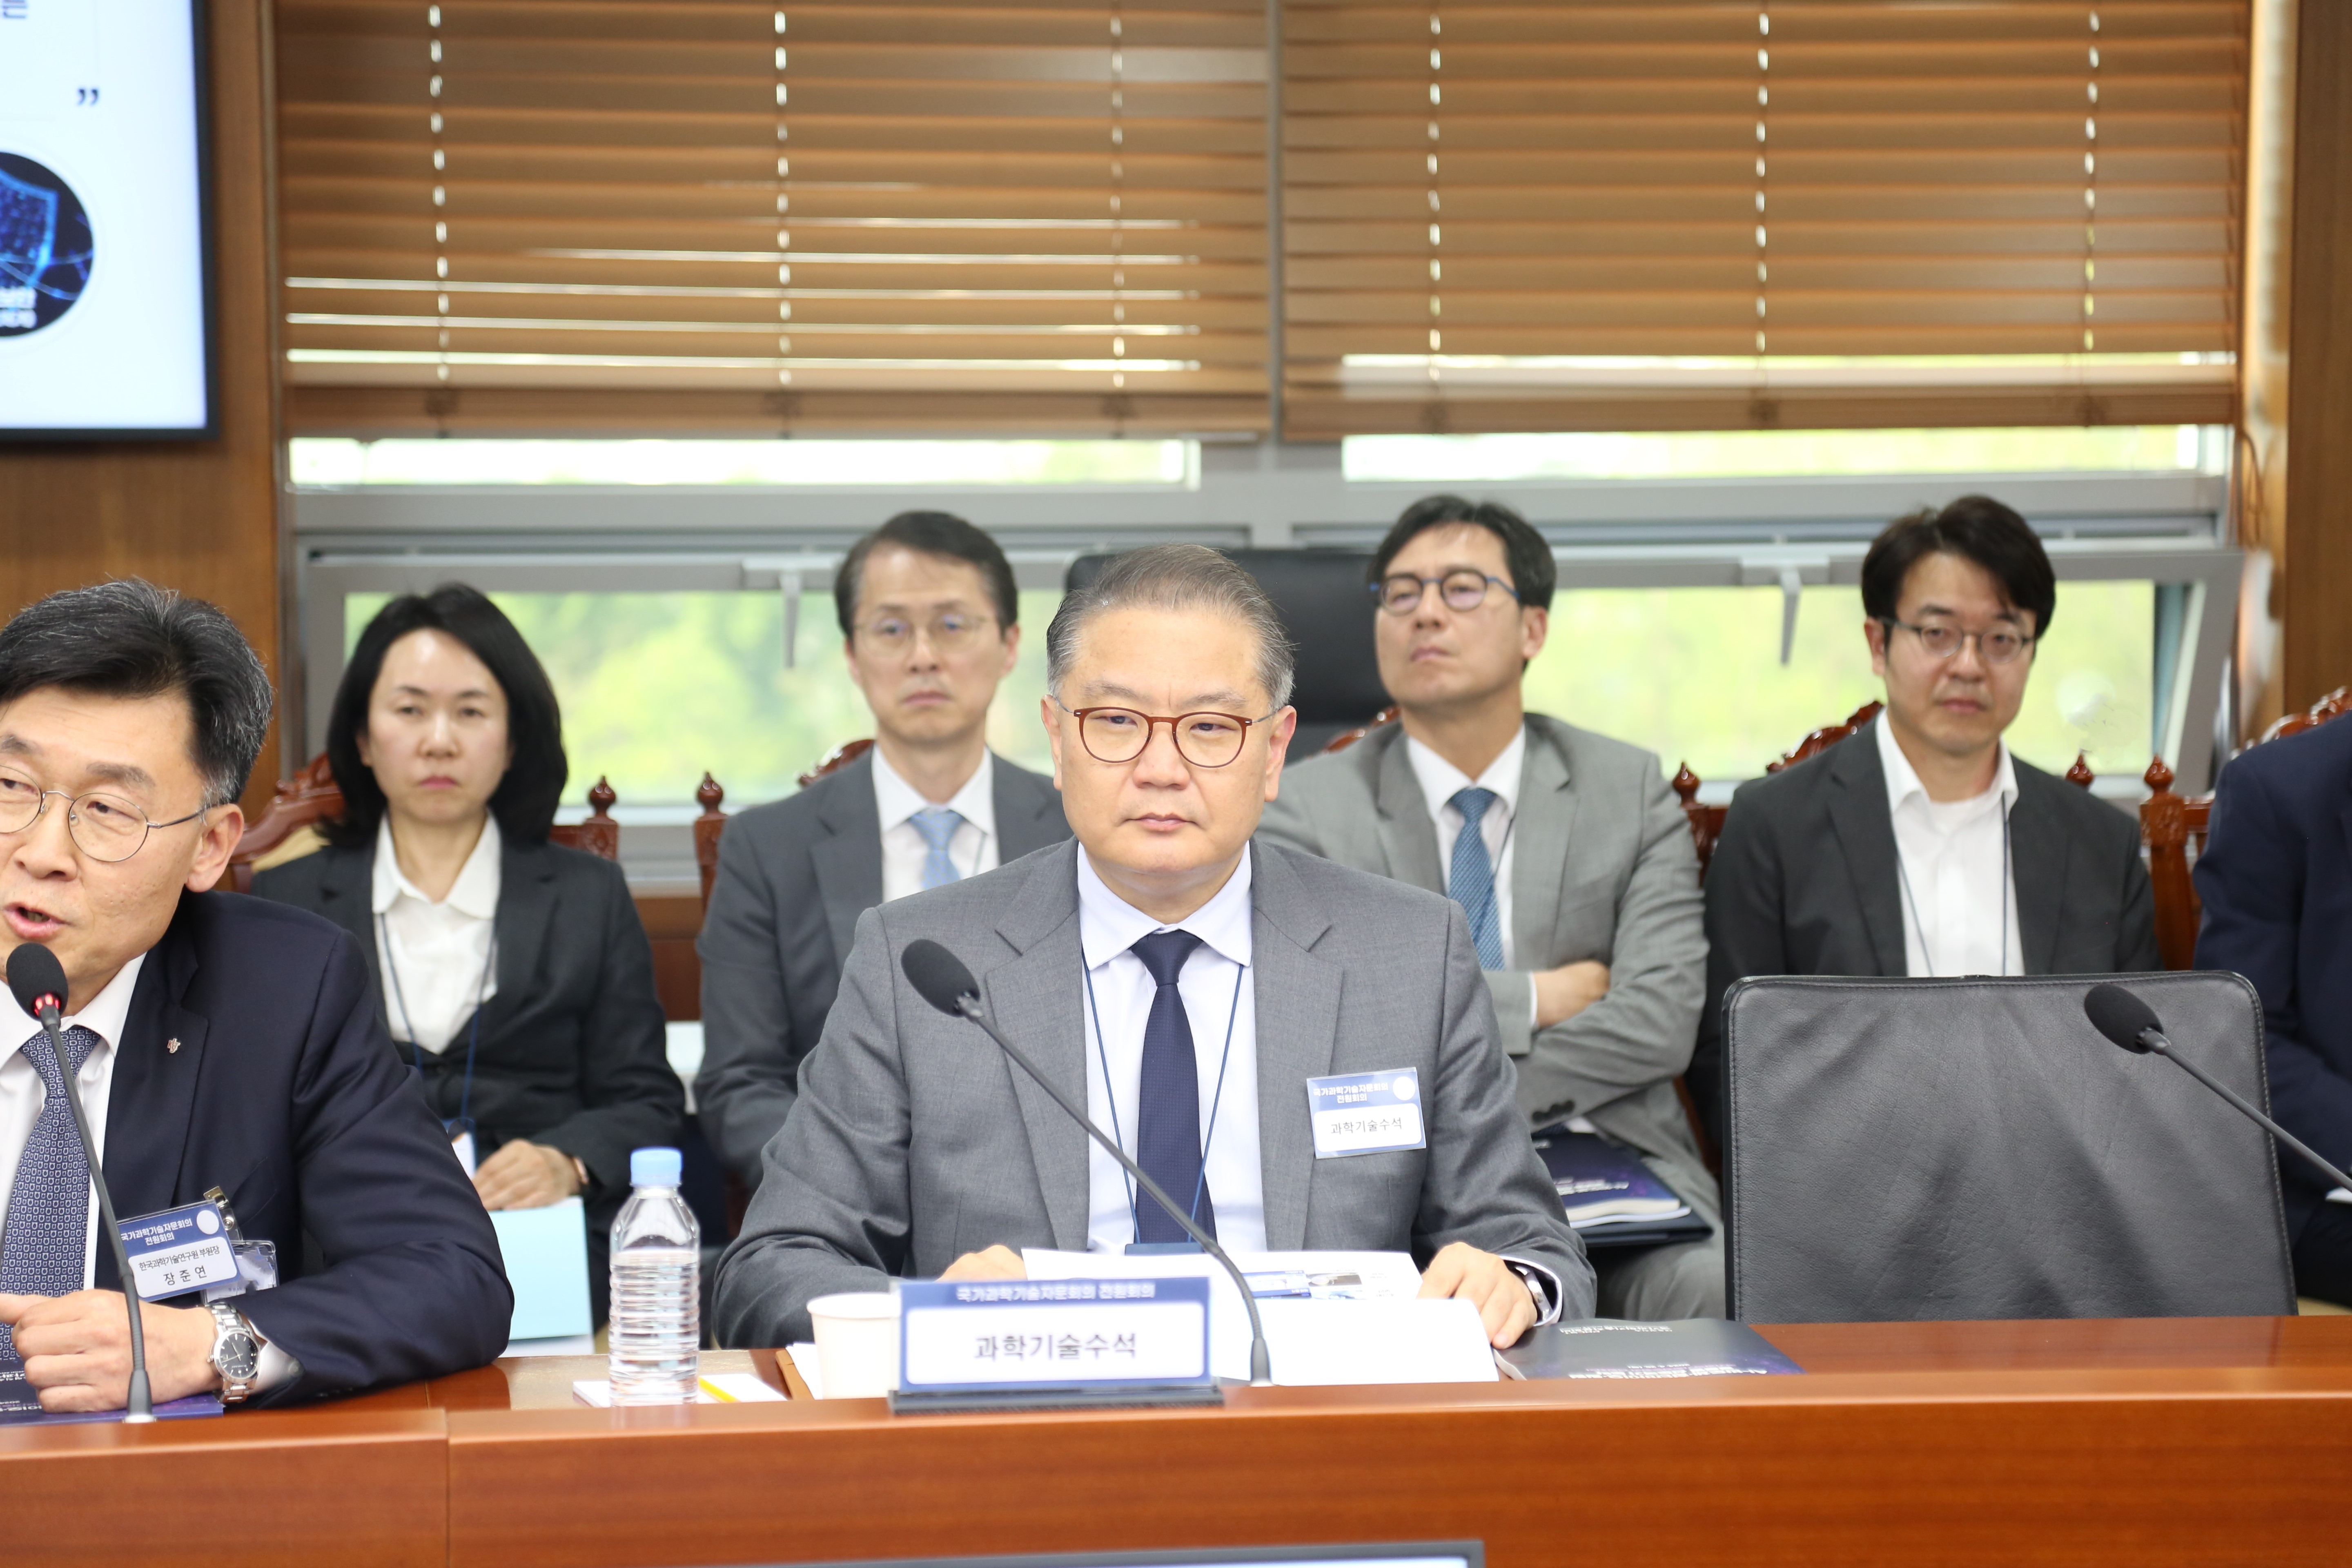 국가과학기술자문회의 제6회 전원회의에 참석한 박상욱 대통령실 과학기술수석비서관의 모습